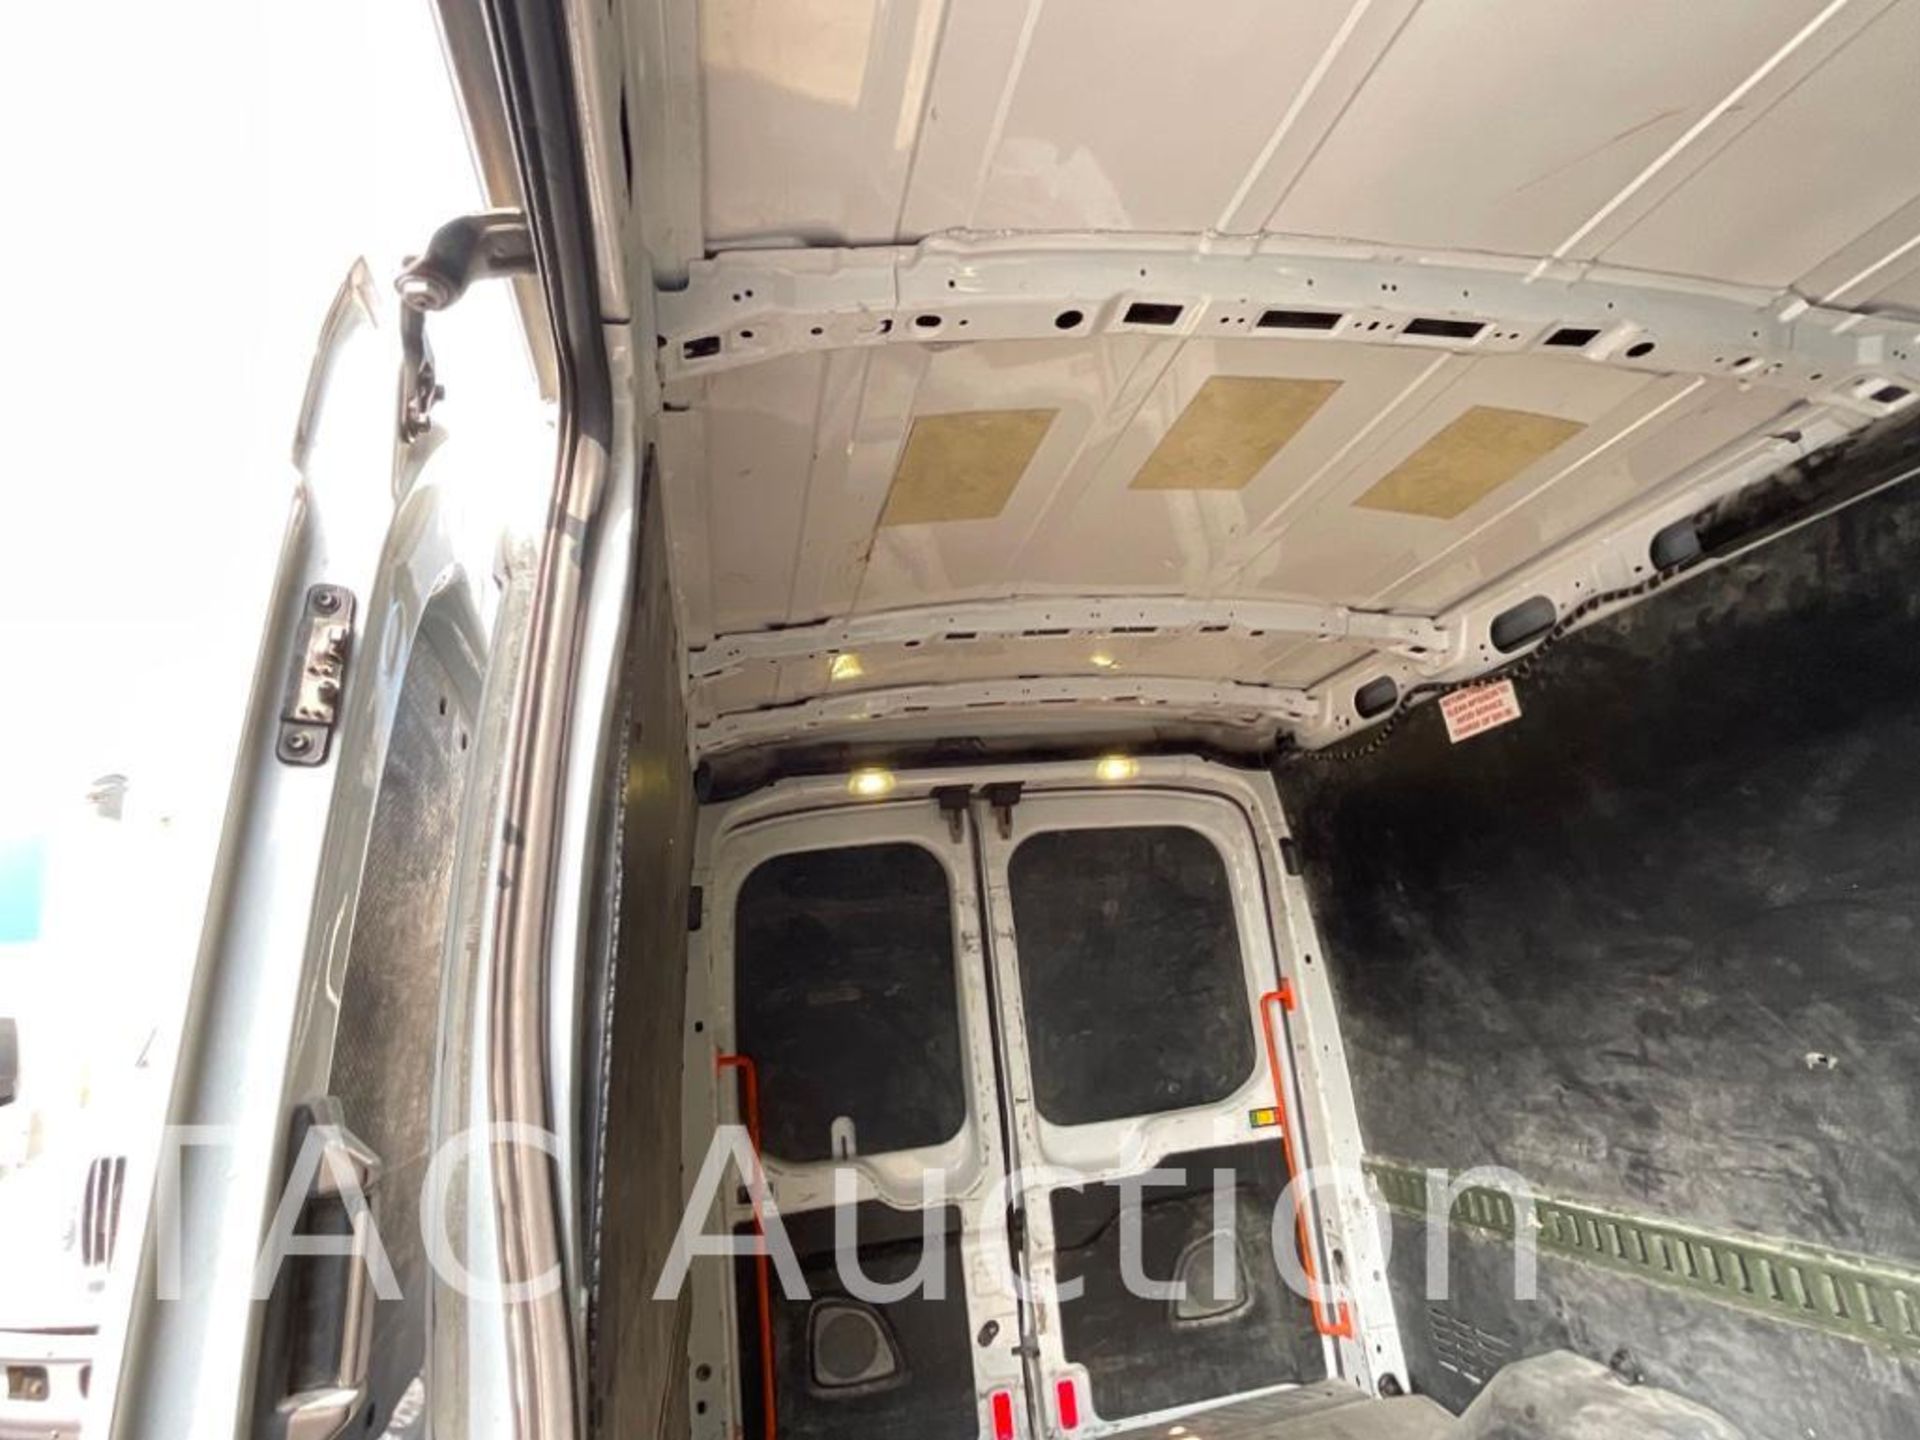 2017 Ford Transit 150 Cargo Van - Image 26 of 49